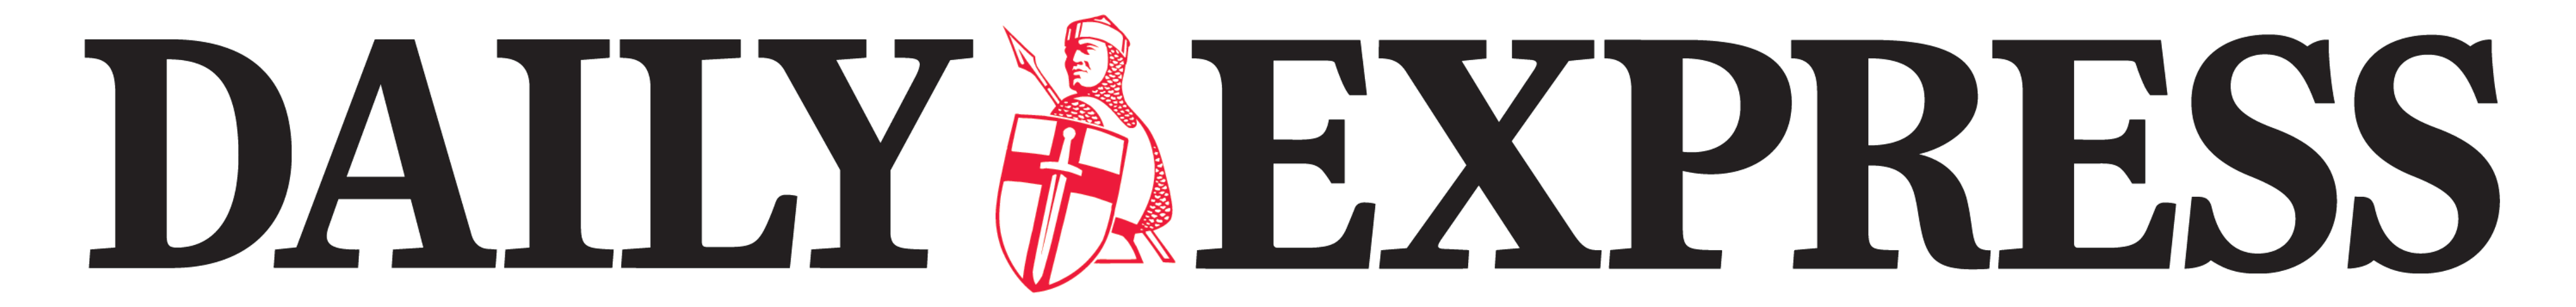 Daily_Express_logo_logotype (1)